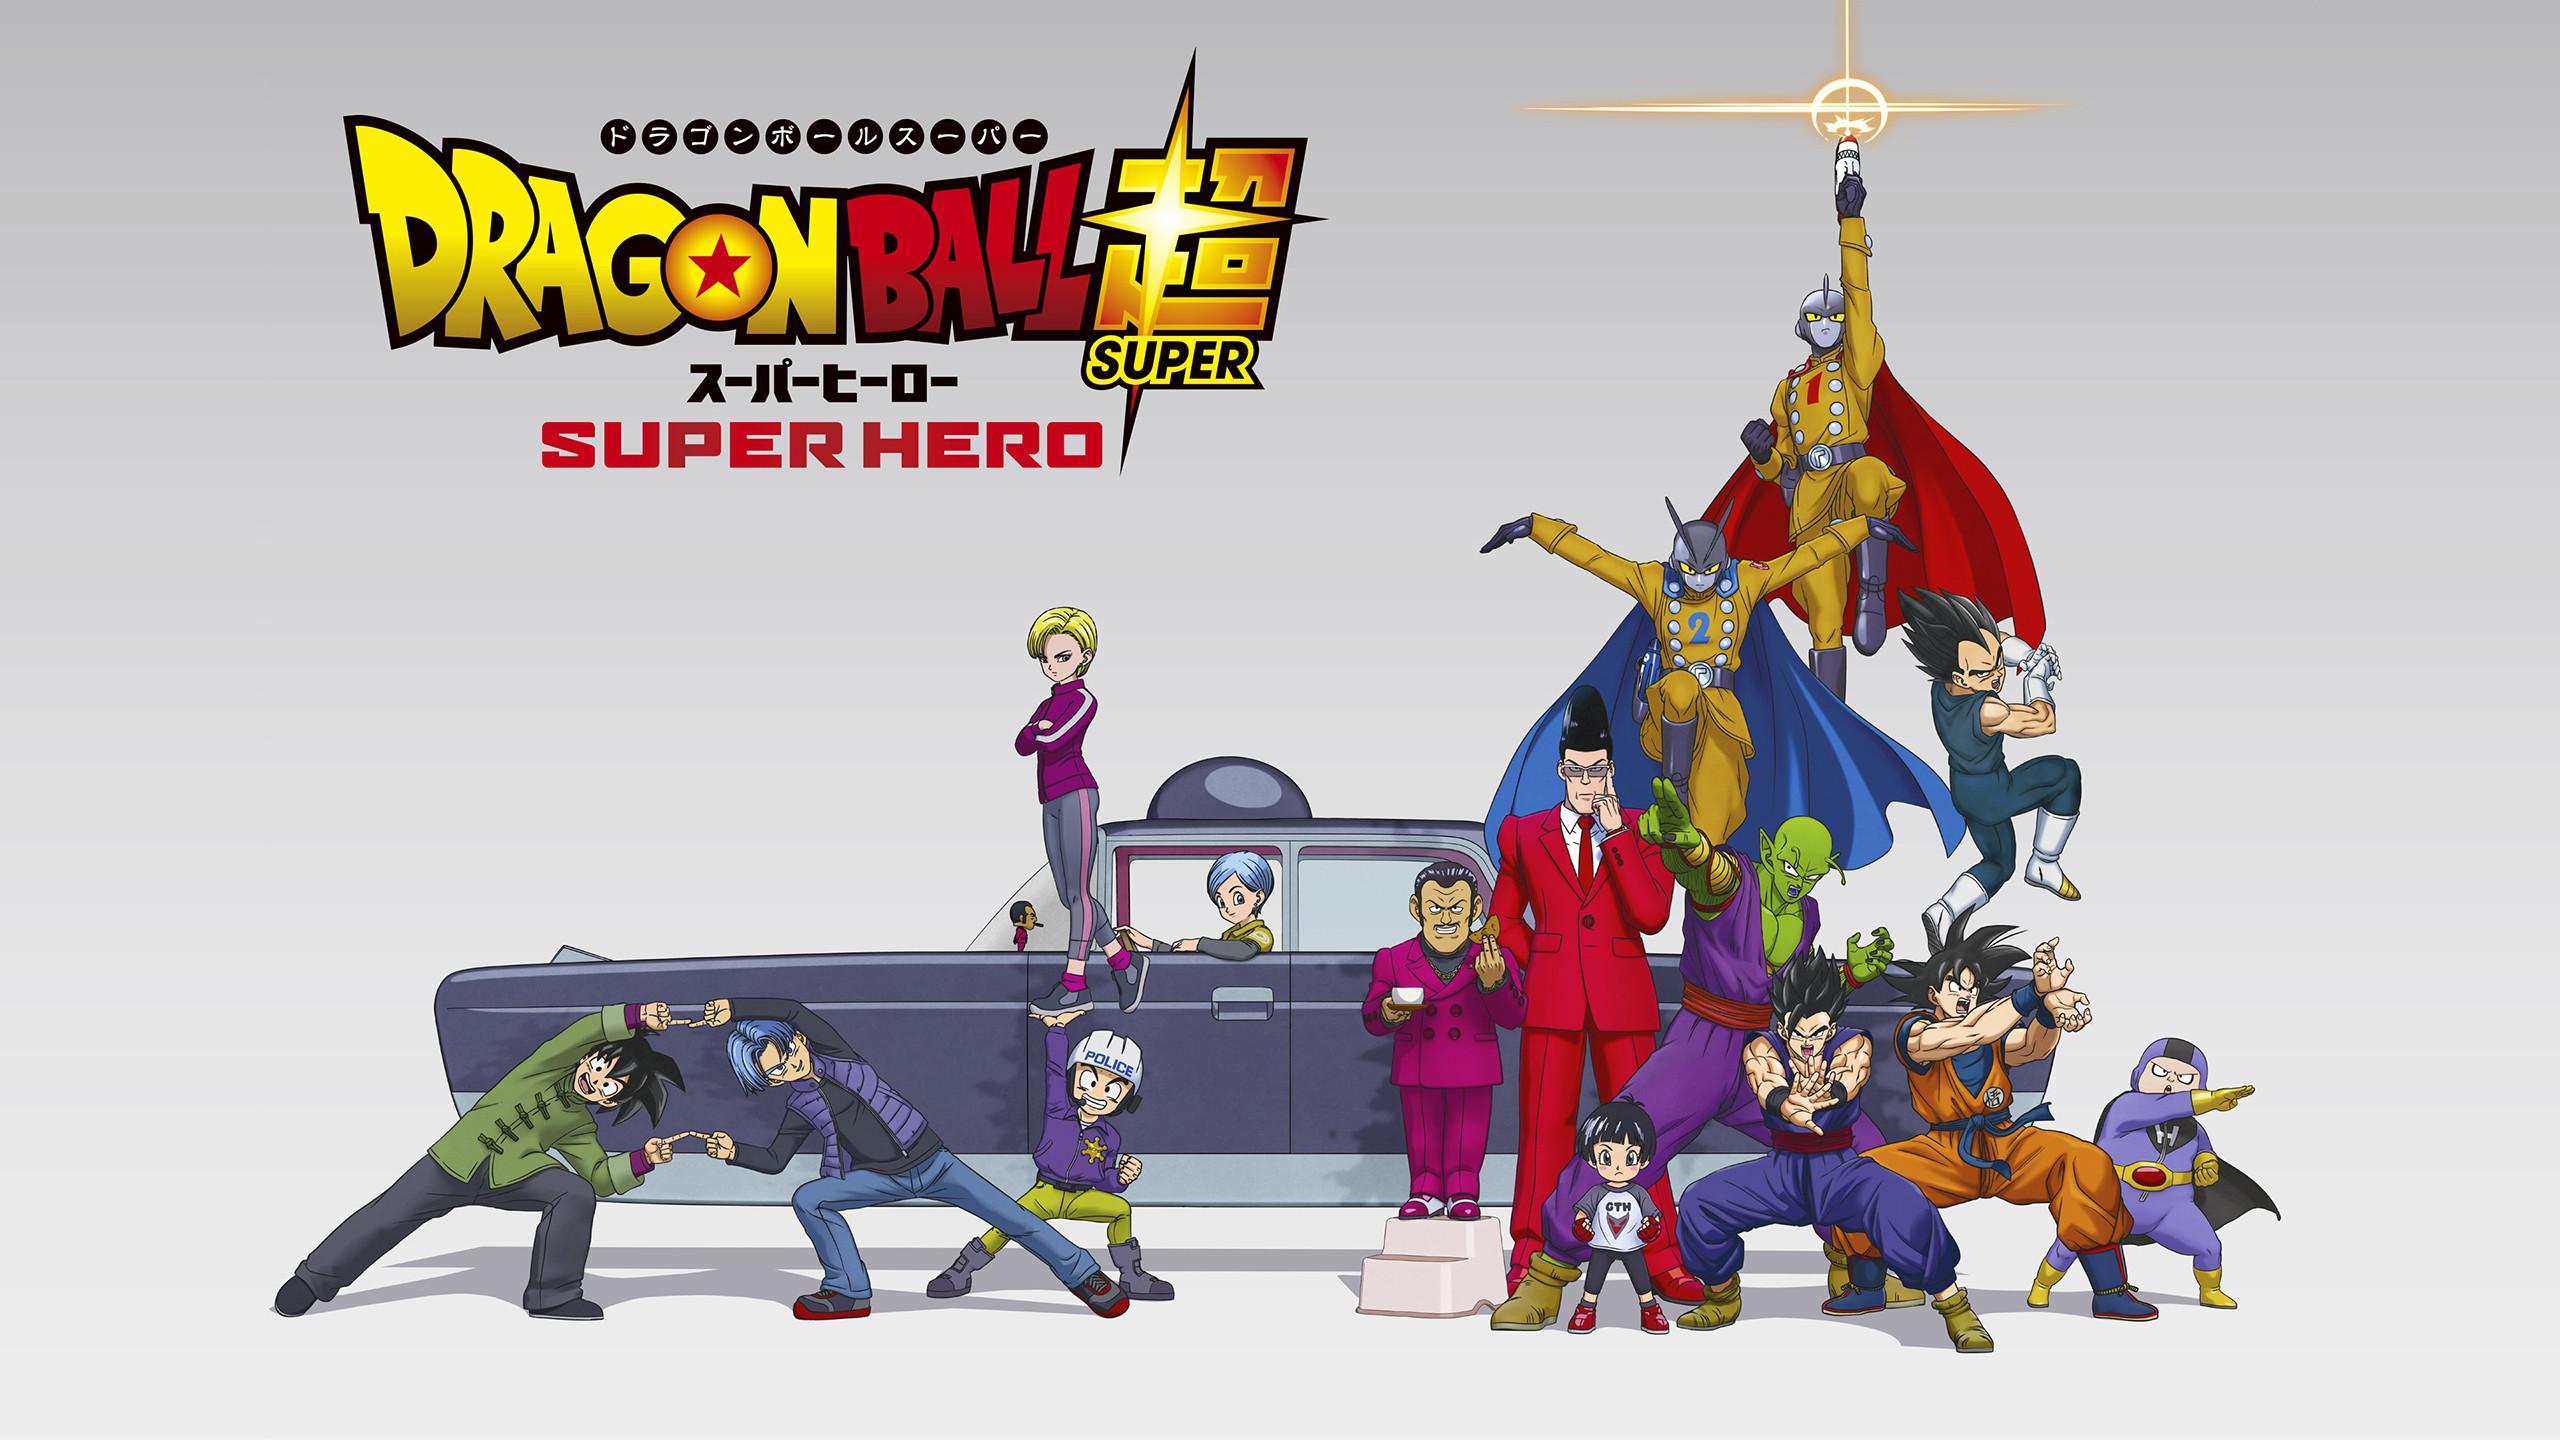 Dragon Ball Super Super Hero Wallpapers - Top 30 Best Dragon Ball Super  Super Hero Wallpapers Download